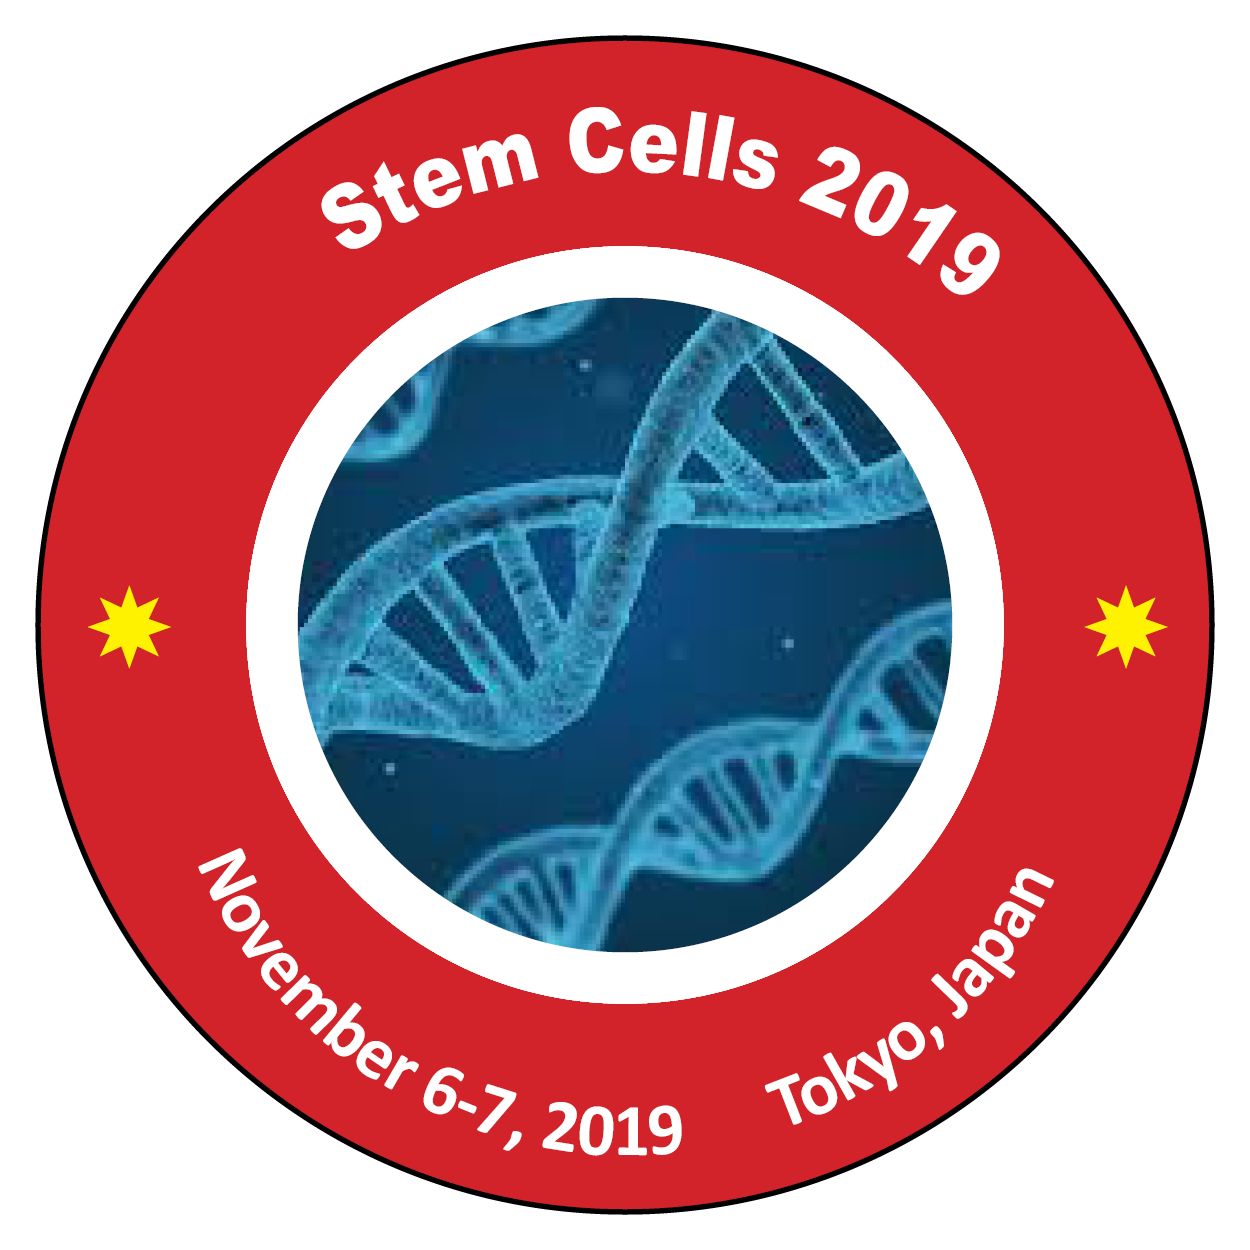 International Conference on Stem Cells and Regenerative Medicine